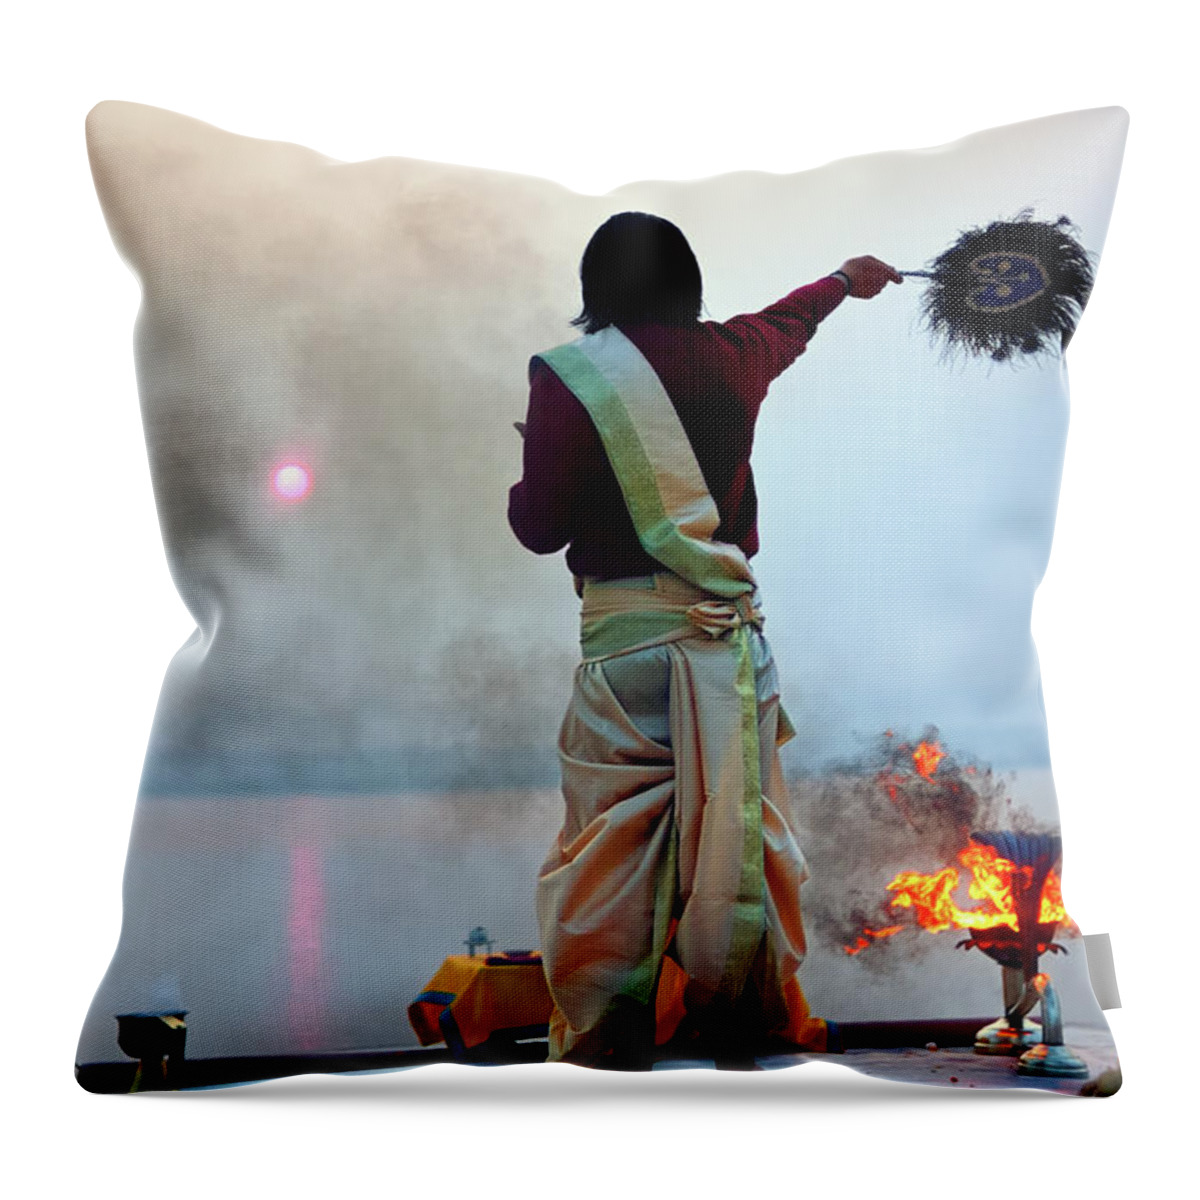 Hinduism Throw Pillow featuring the photograph Probhat Aroti Morning Puja by Apratim Saha